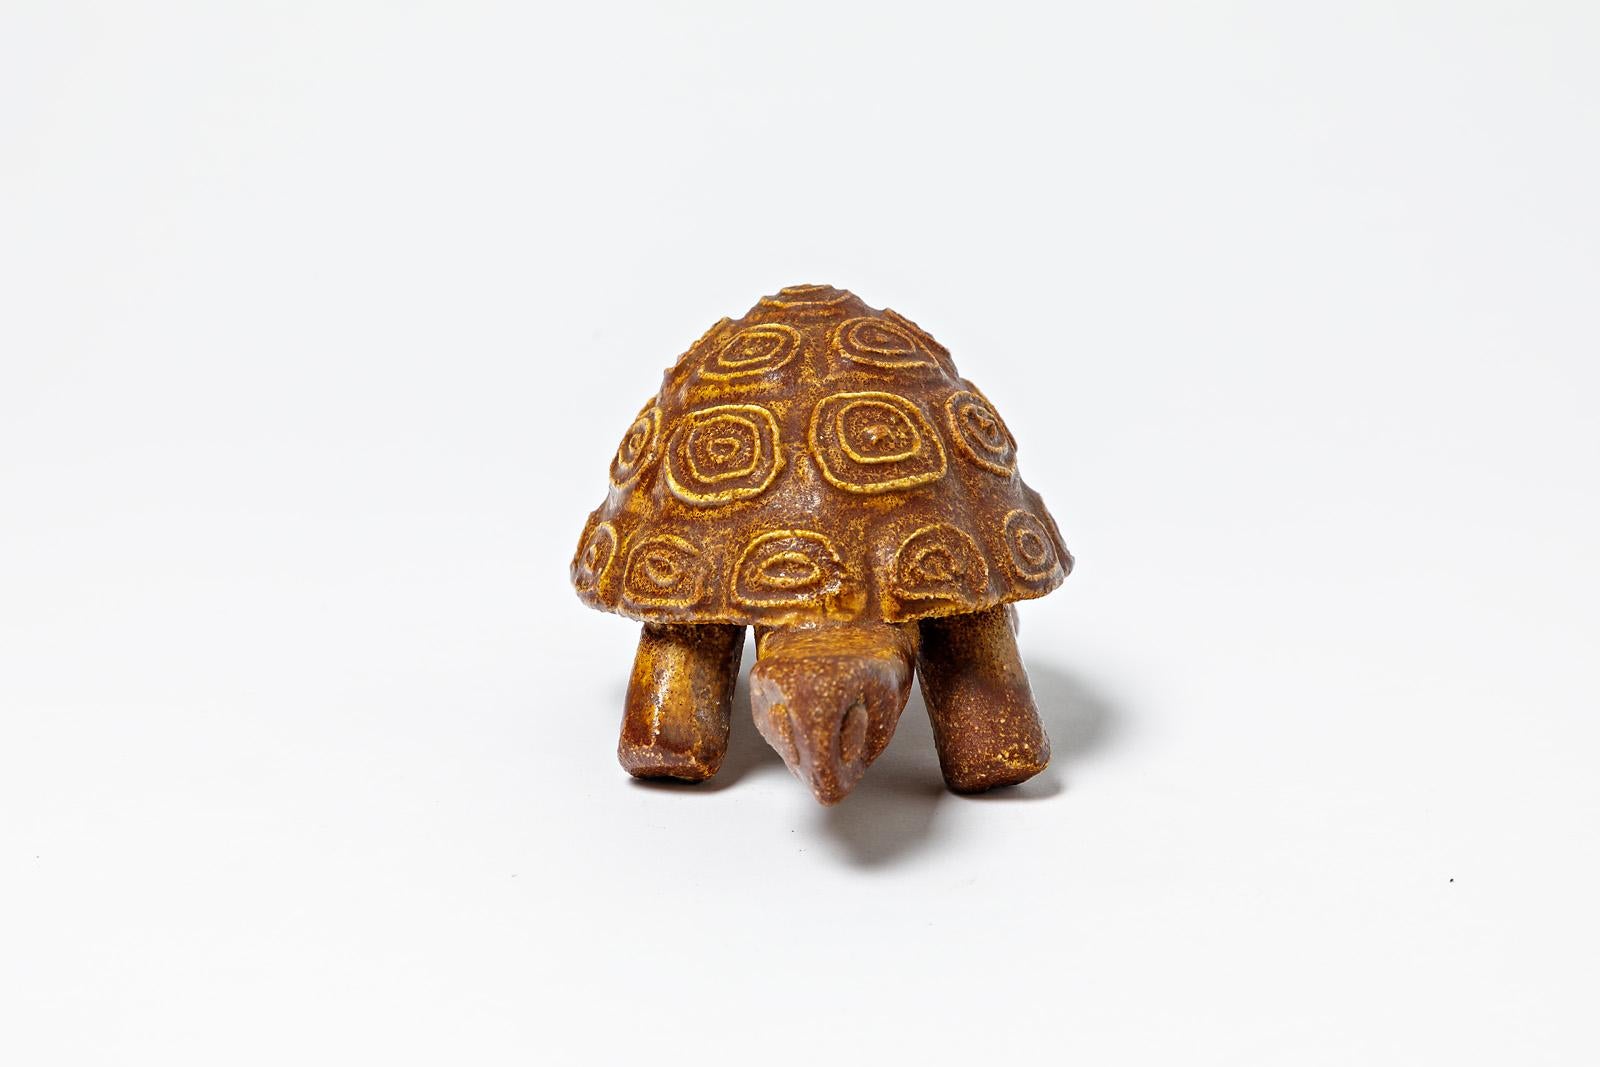 Accolay

Keramische Skulptur, die eine Schildkröte darstellt.

Orangefarbene Keramikglasur.

Unterschrieben unter dem Sockel ACCOLAY

Abmessungen: 9 x 16 x 10 cm.